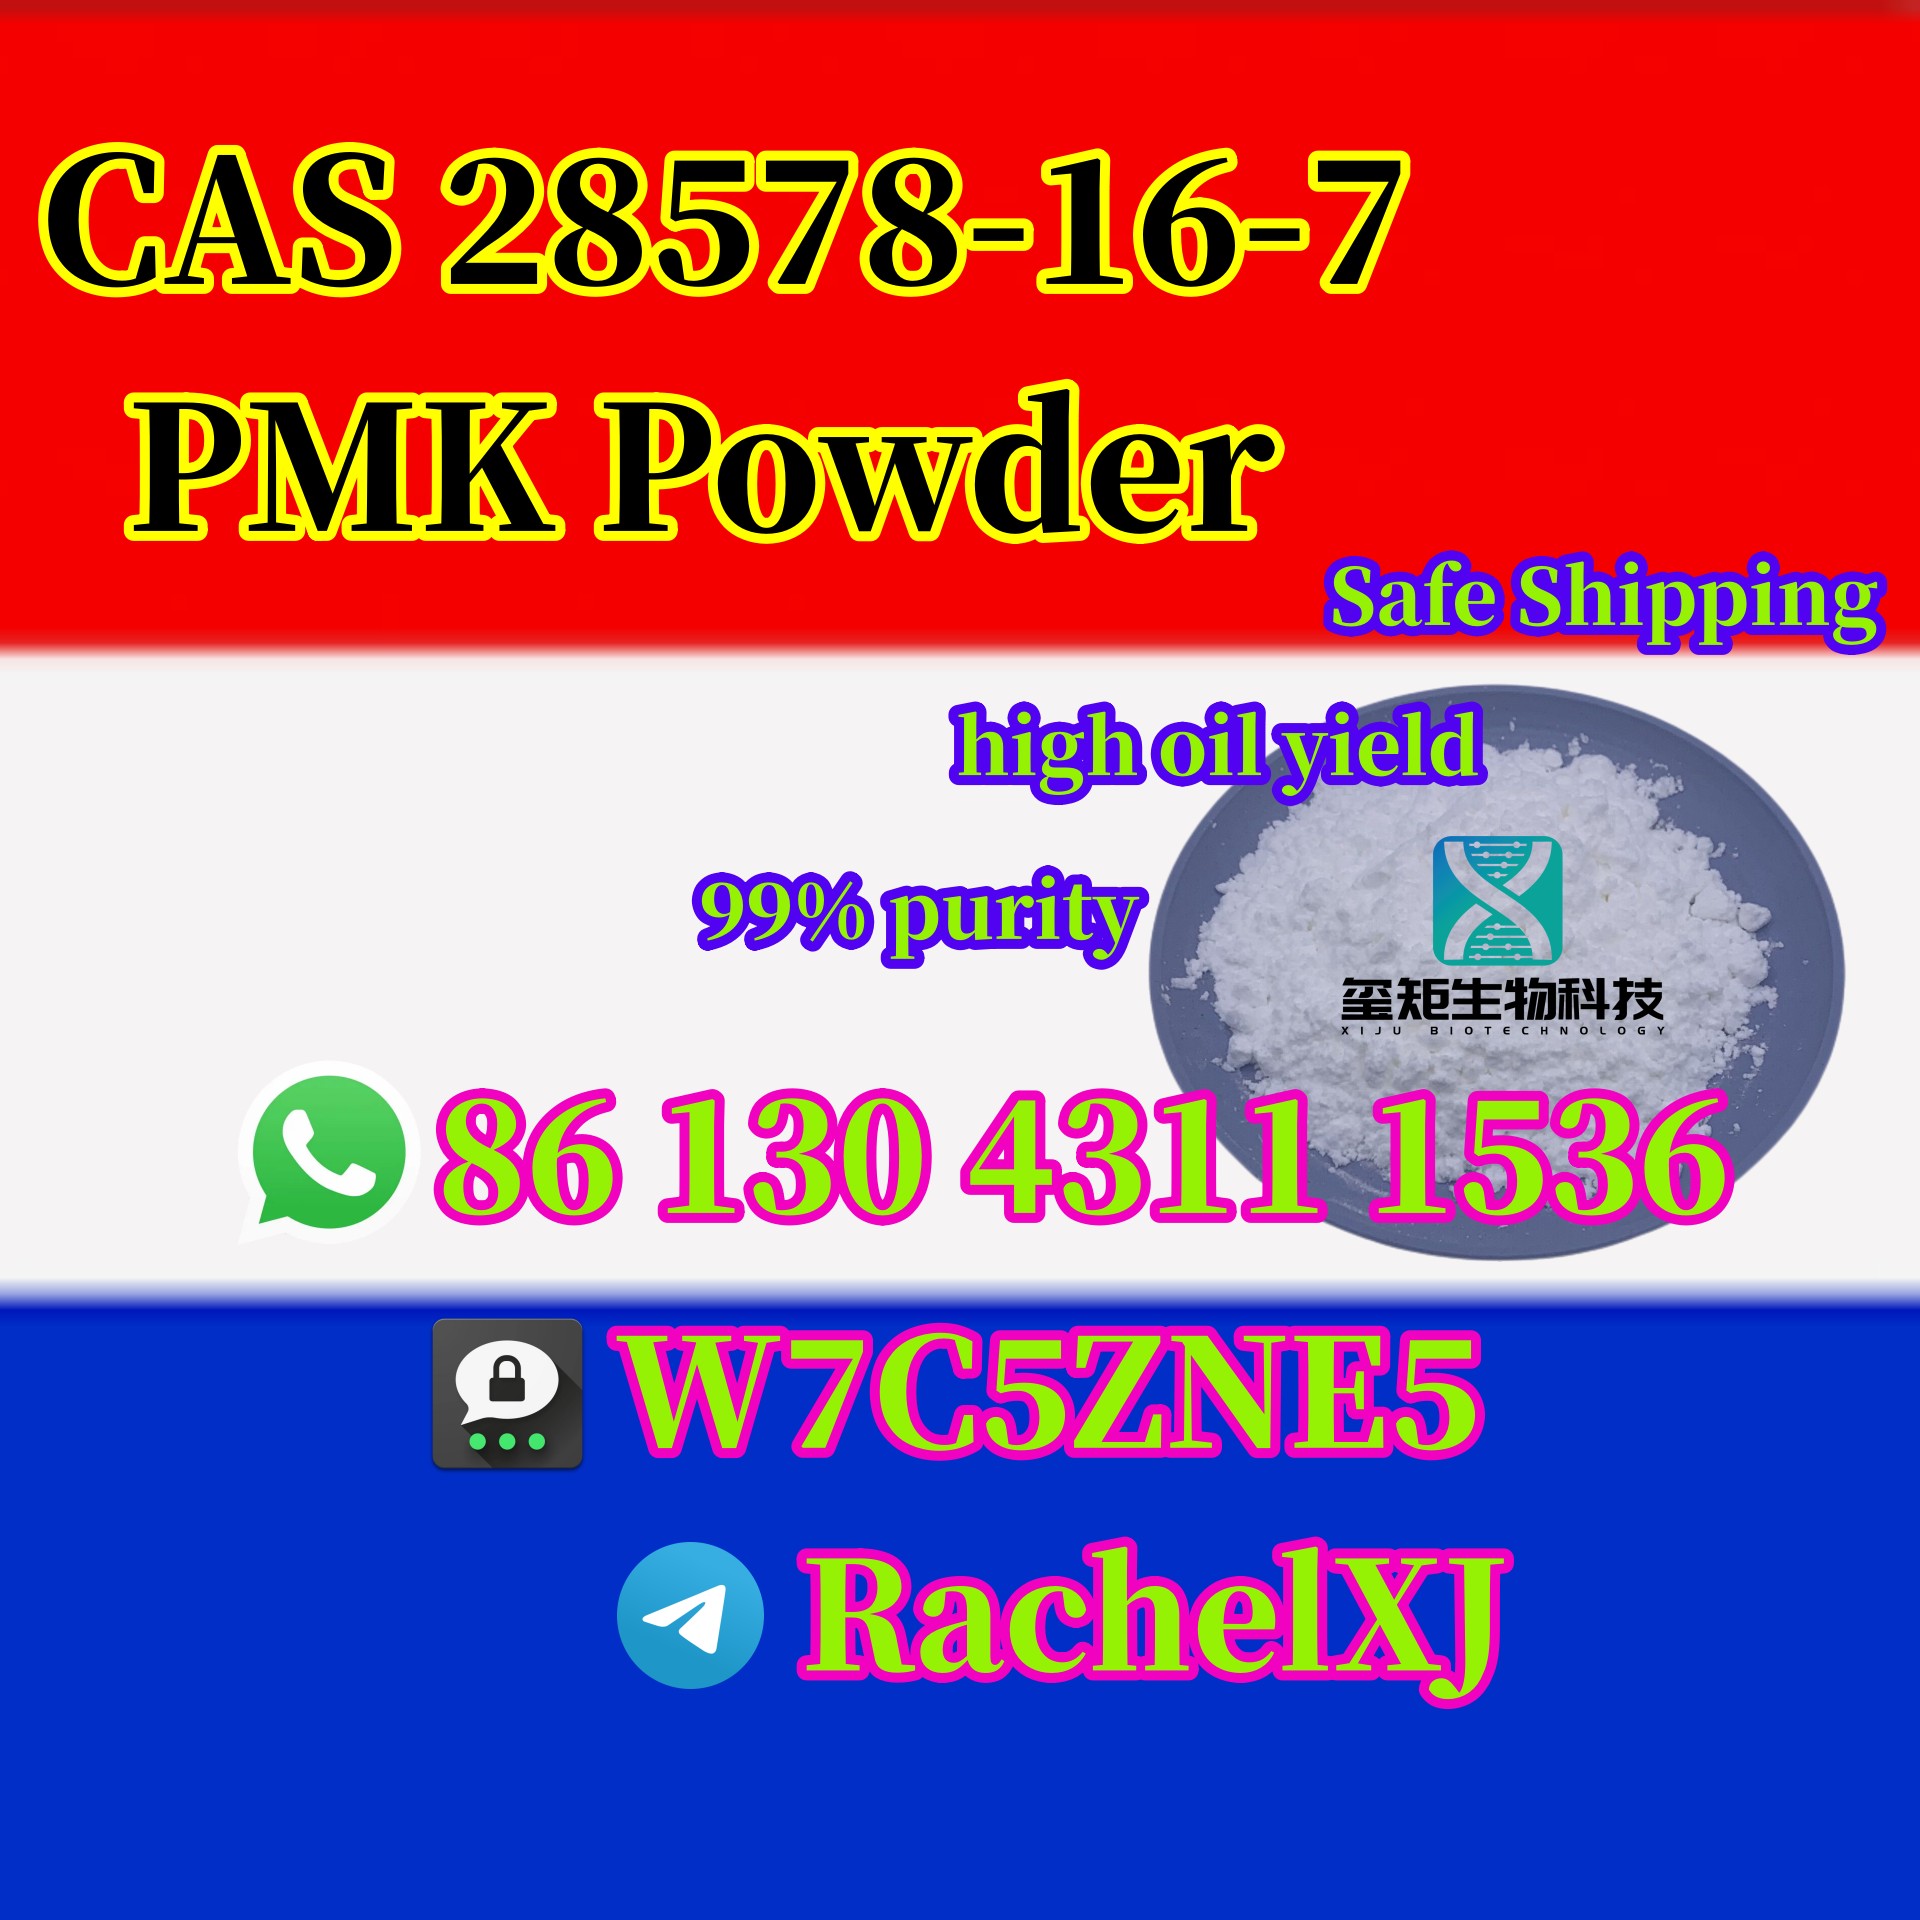 Large Stock CAS 28578-16-7 PMK Powder/Oil with High oil yield Threema:W7C5ZNE5 Tel/whatsapp:+8613043111536 Wickr:rachelya